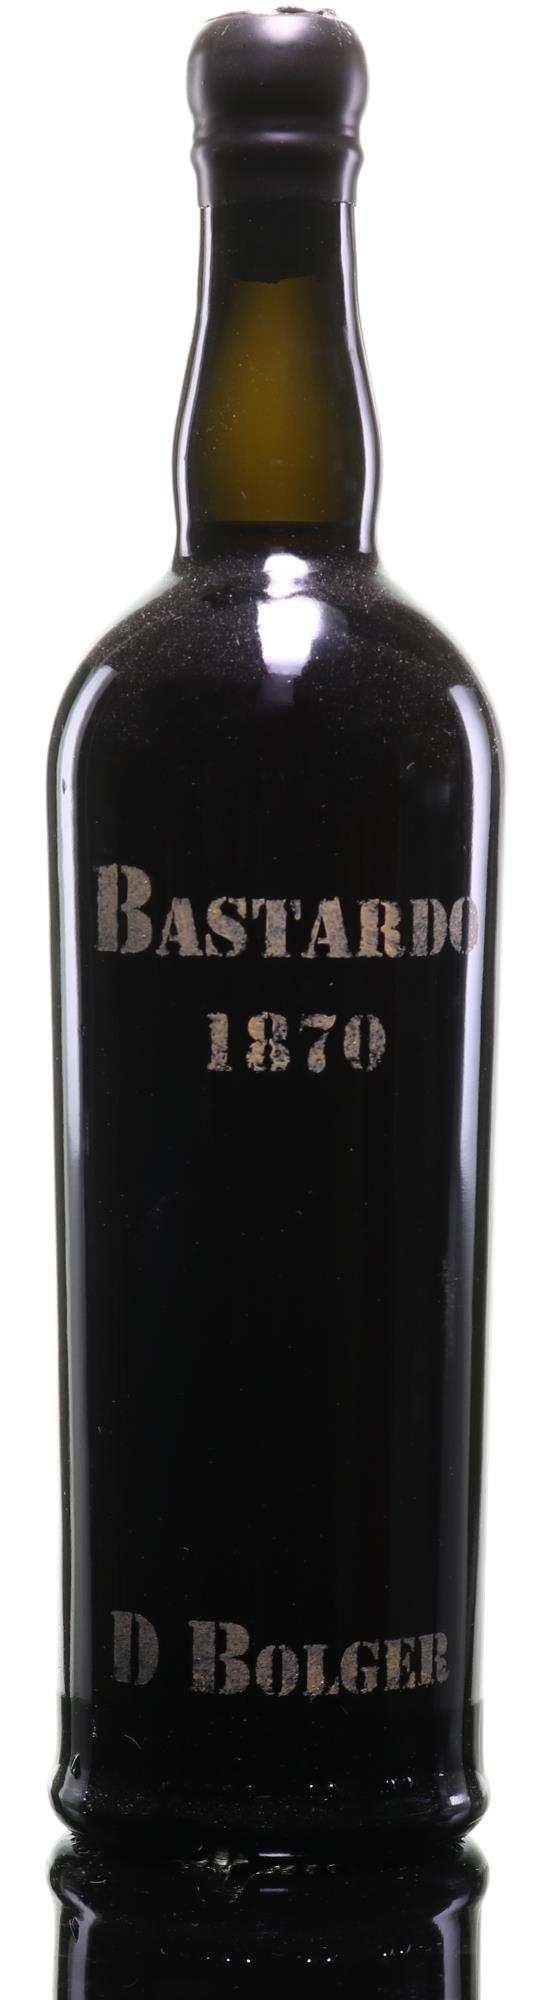 D. Bolger Bastardo Madeira 1870 - Family Seal - Rue Pinard